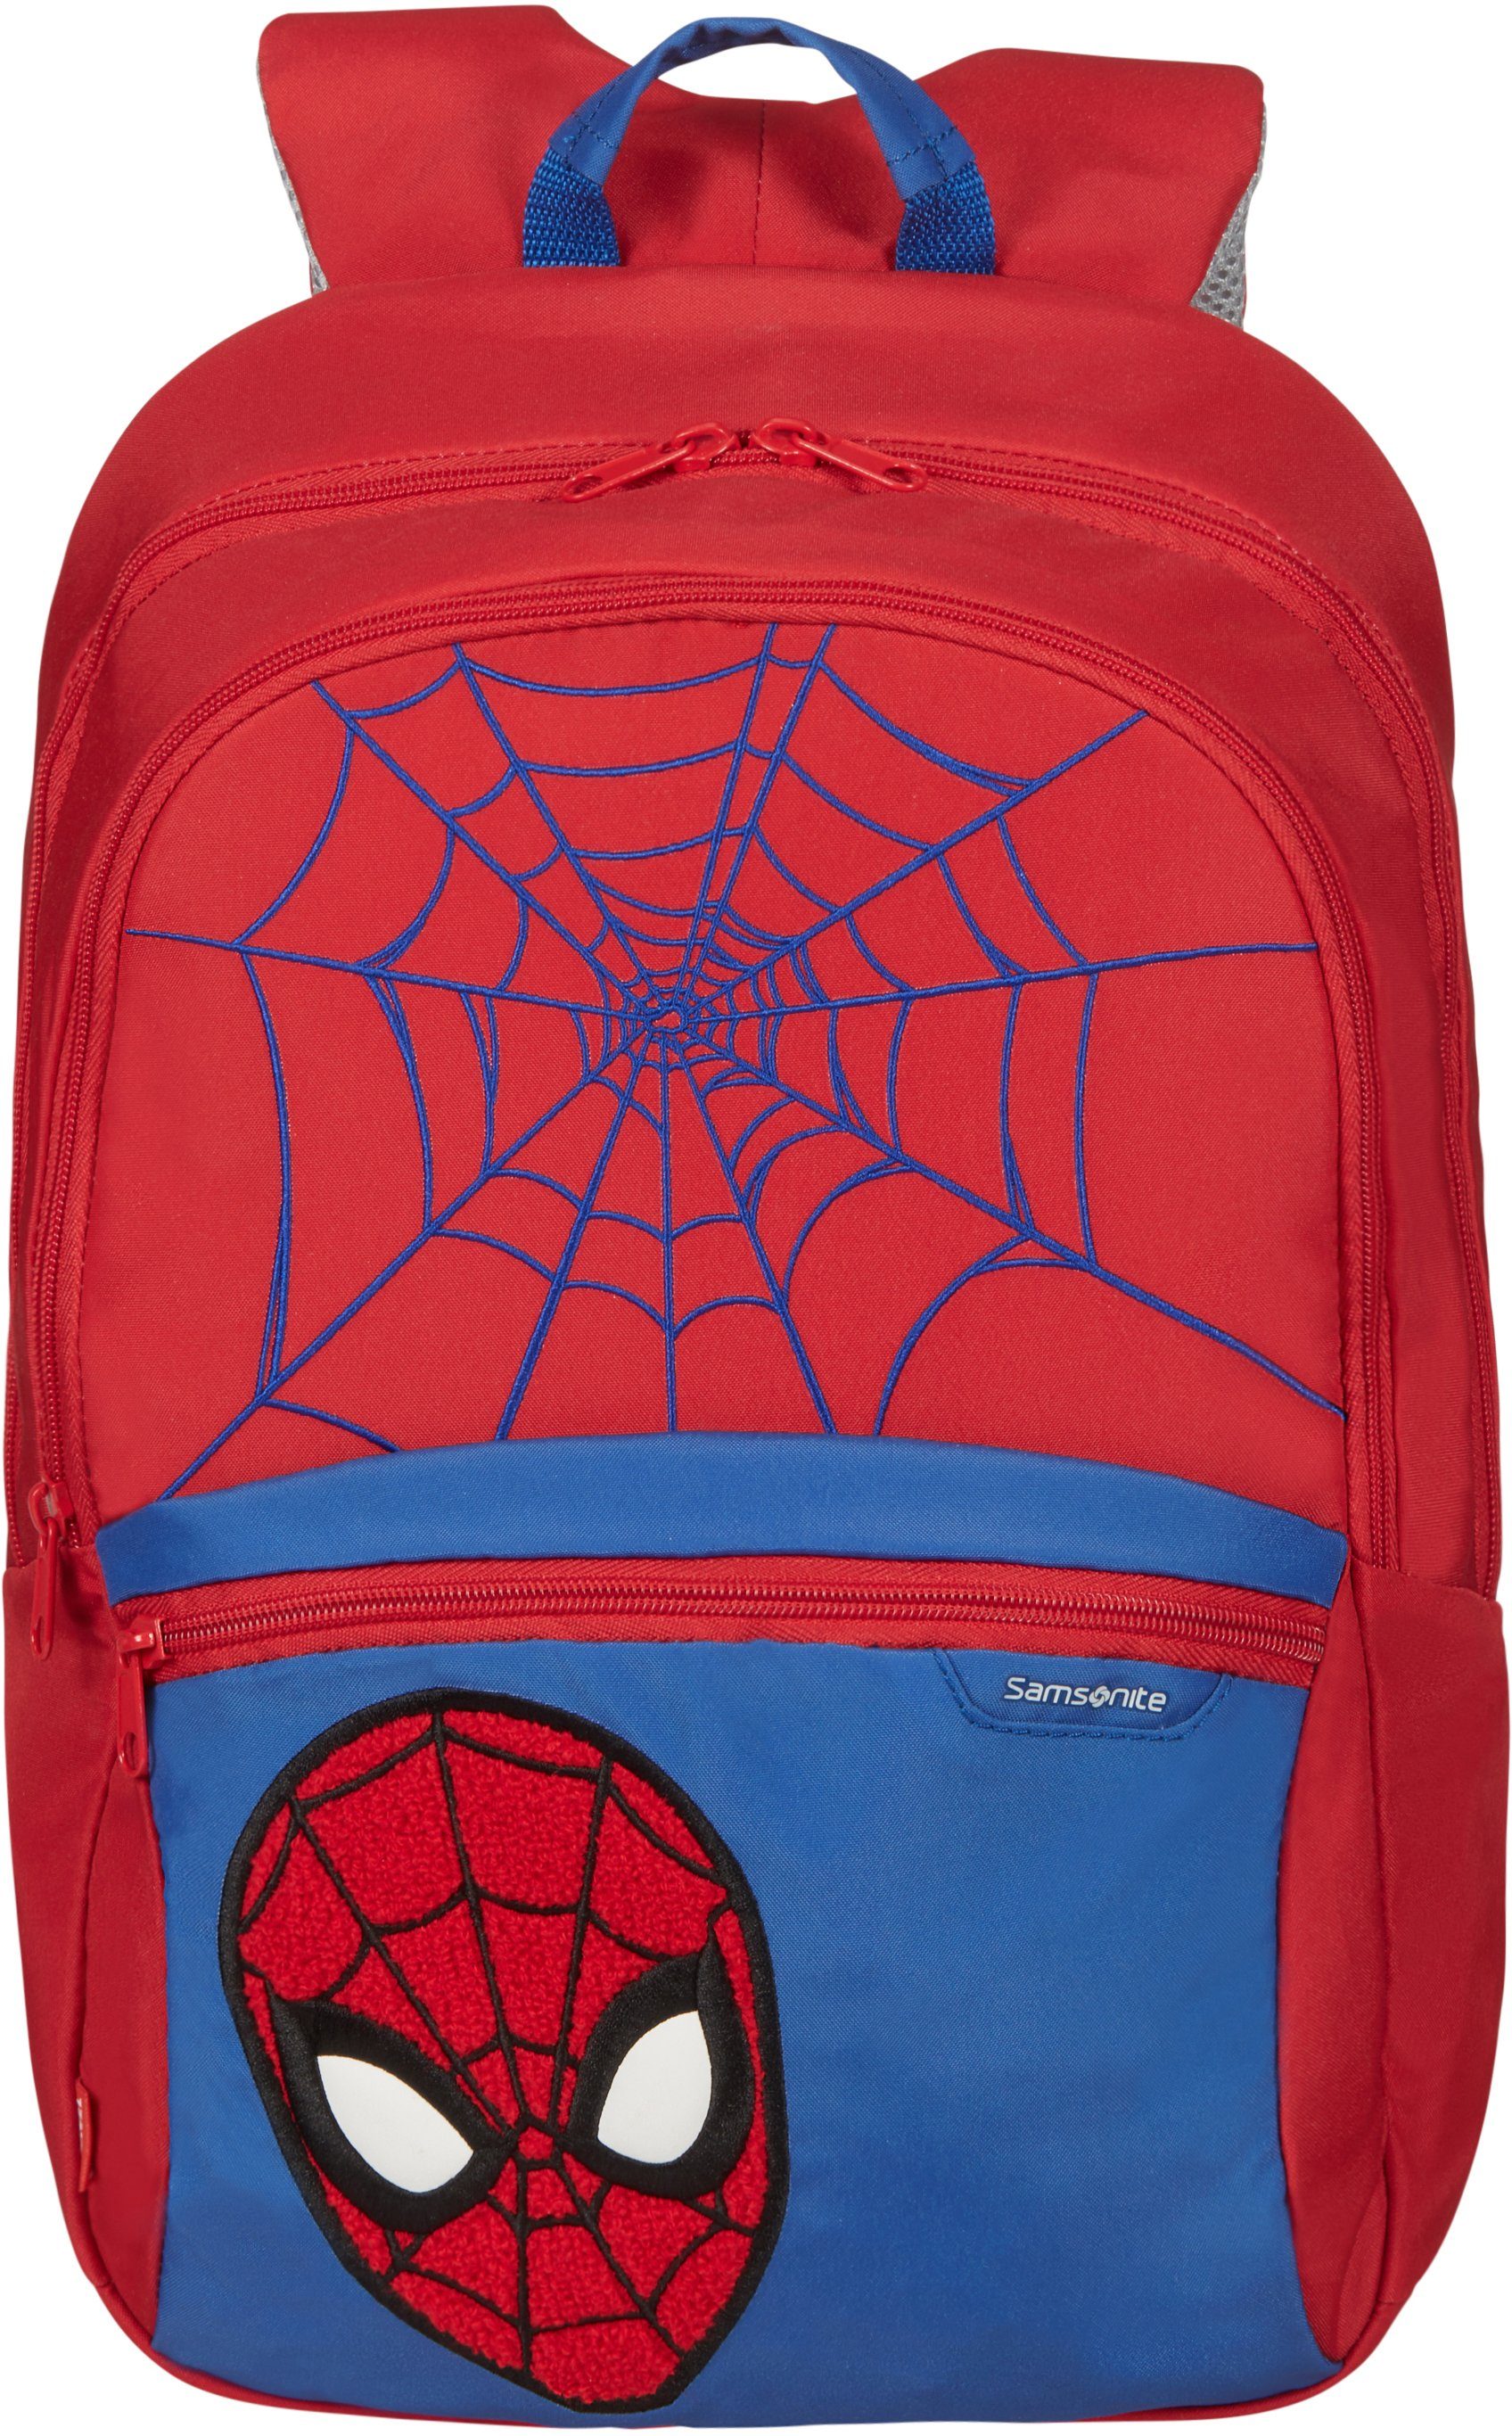 Es ist sicher ausverkauft! Samsonite Kinderrucksack Disney Ultimate 2.0, Spiderman M